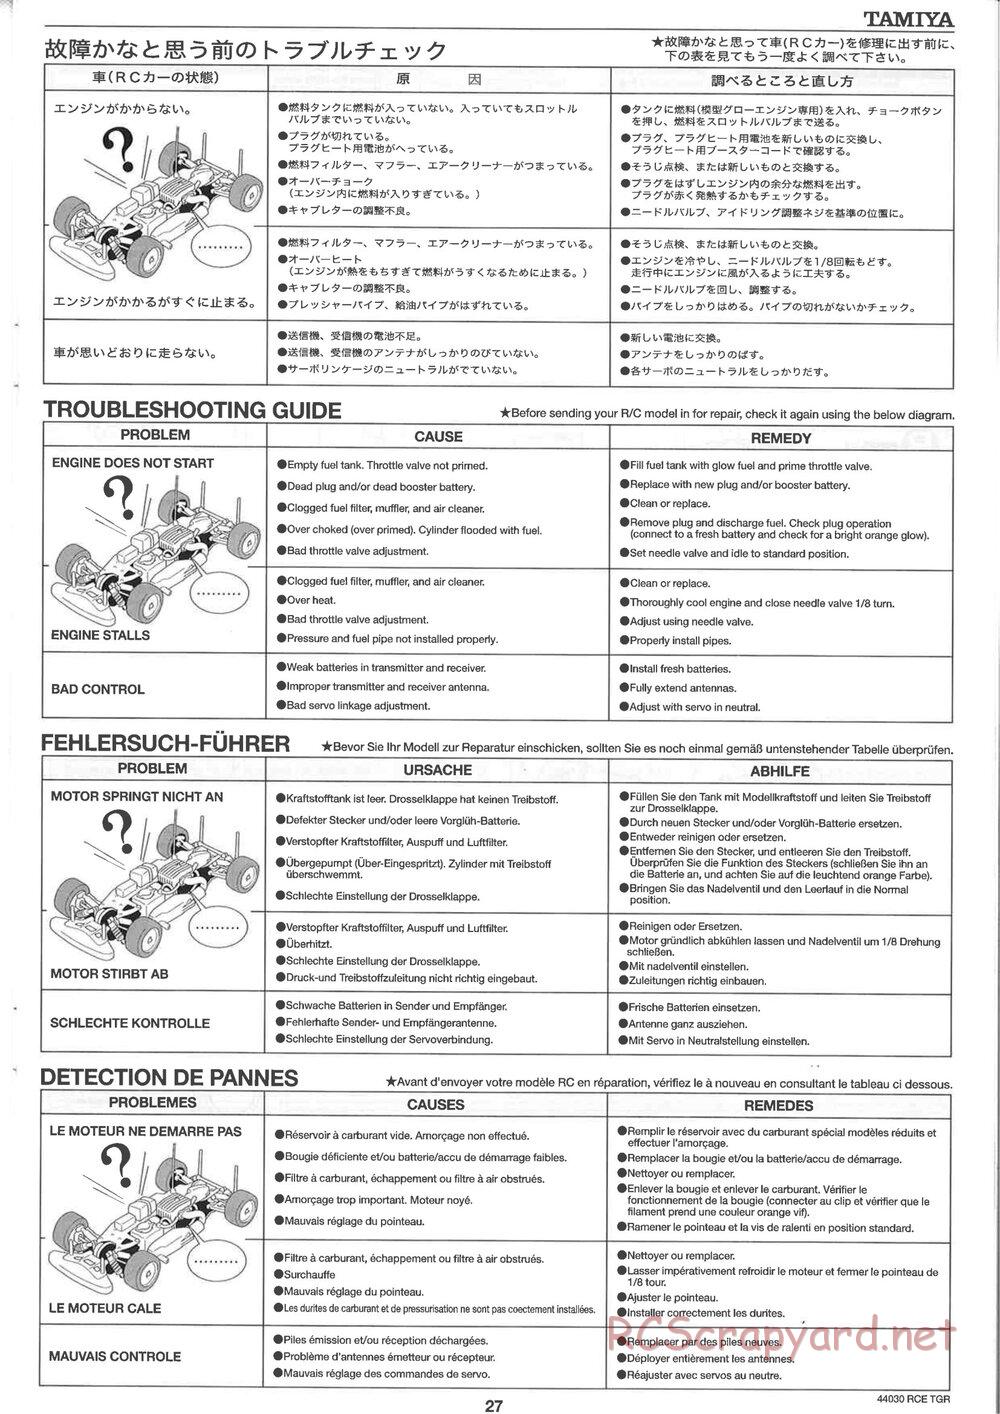 Tamiya - TGR Chassis - Manual - Page 27